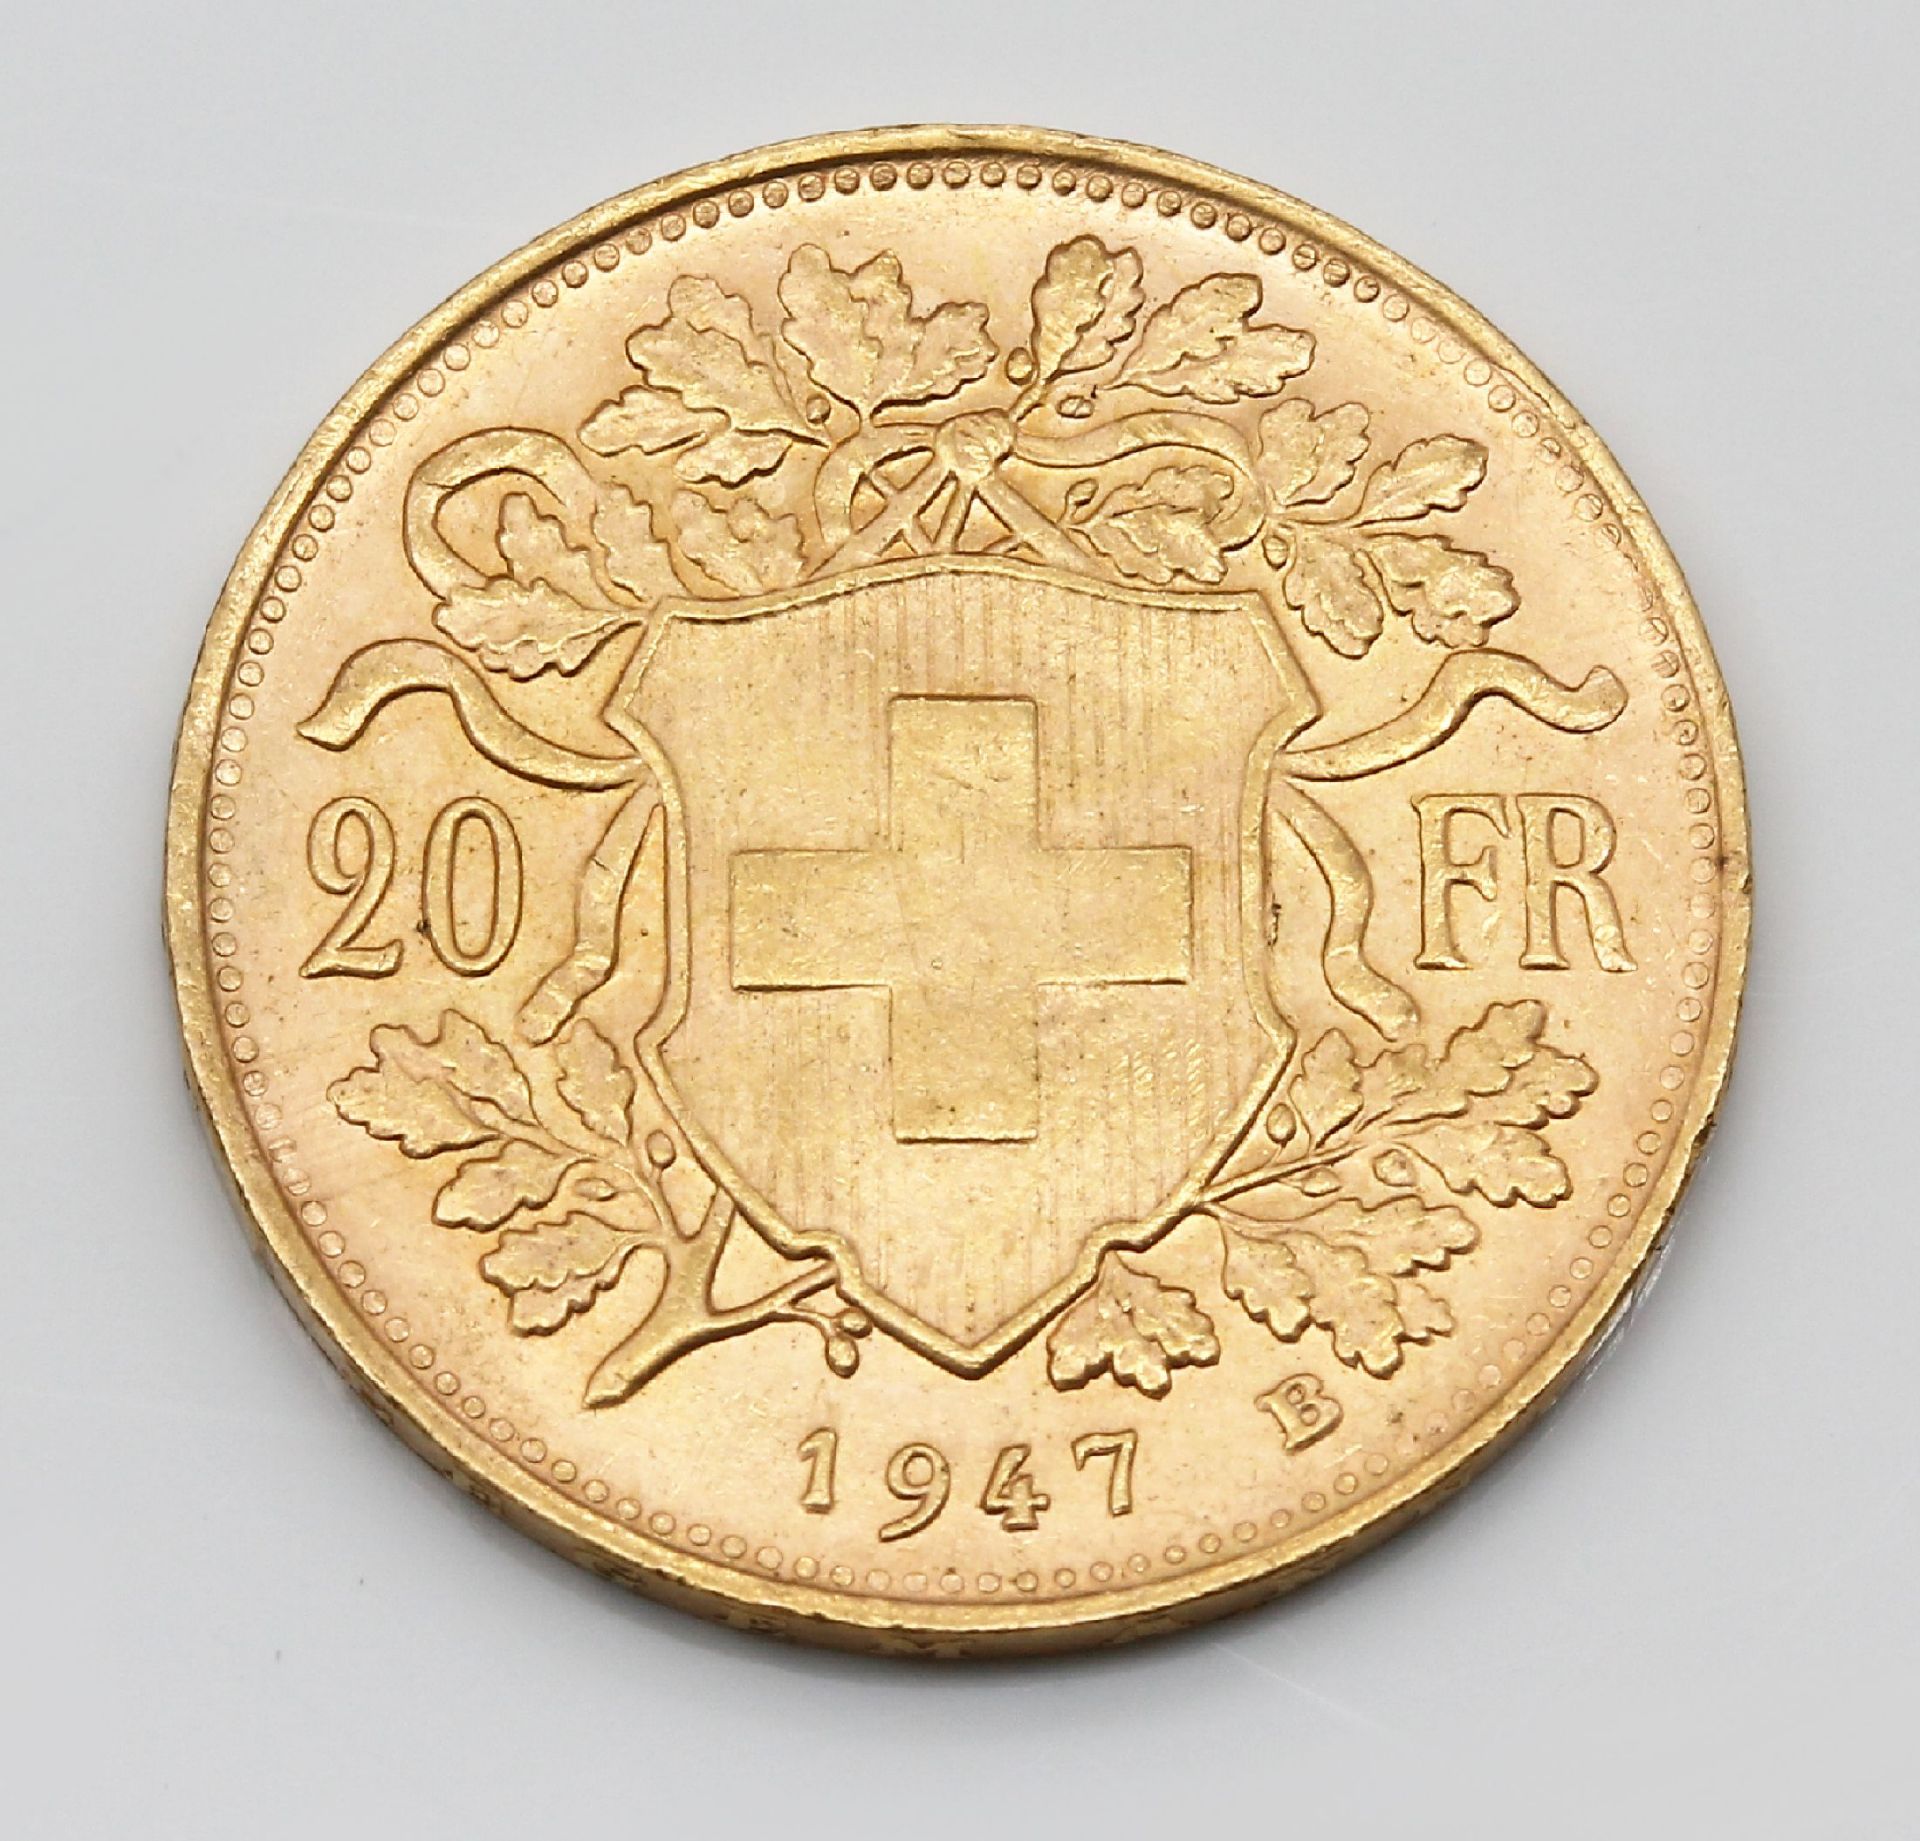 Goldmünze 20 Franken, Schweiz 1947, sogn. Vreneli, - Image 2 of 3